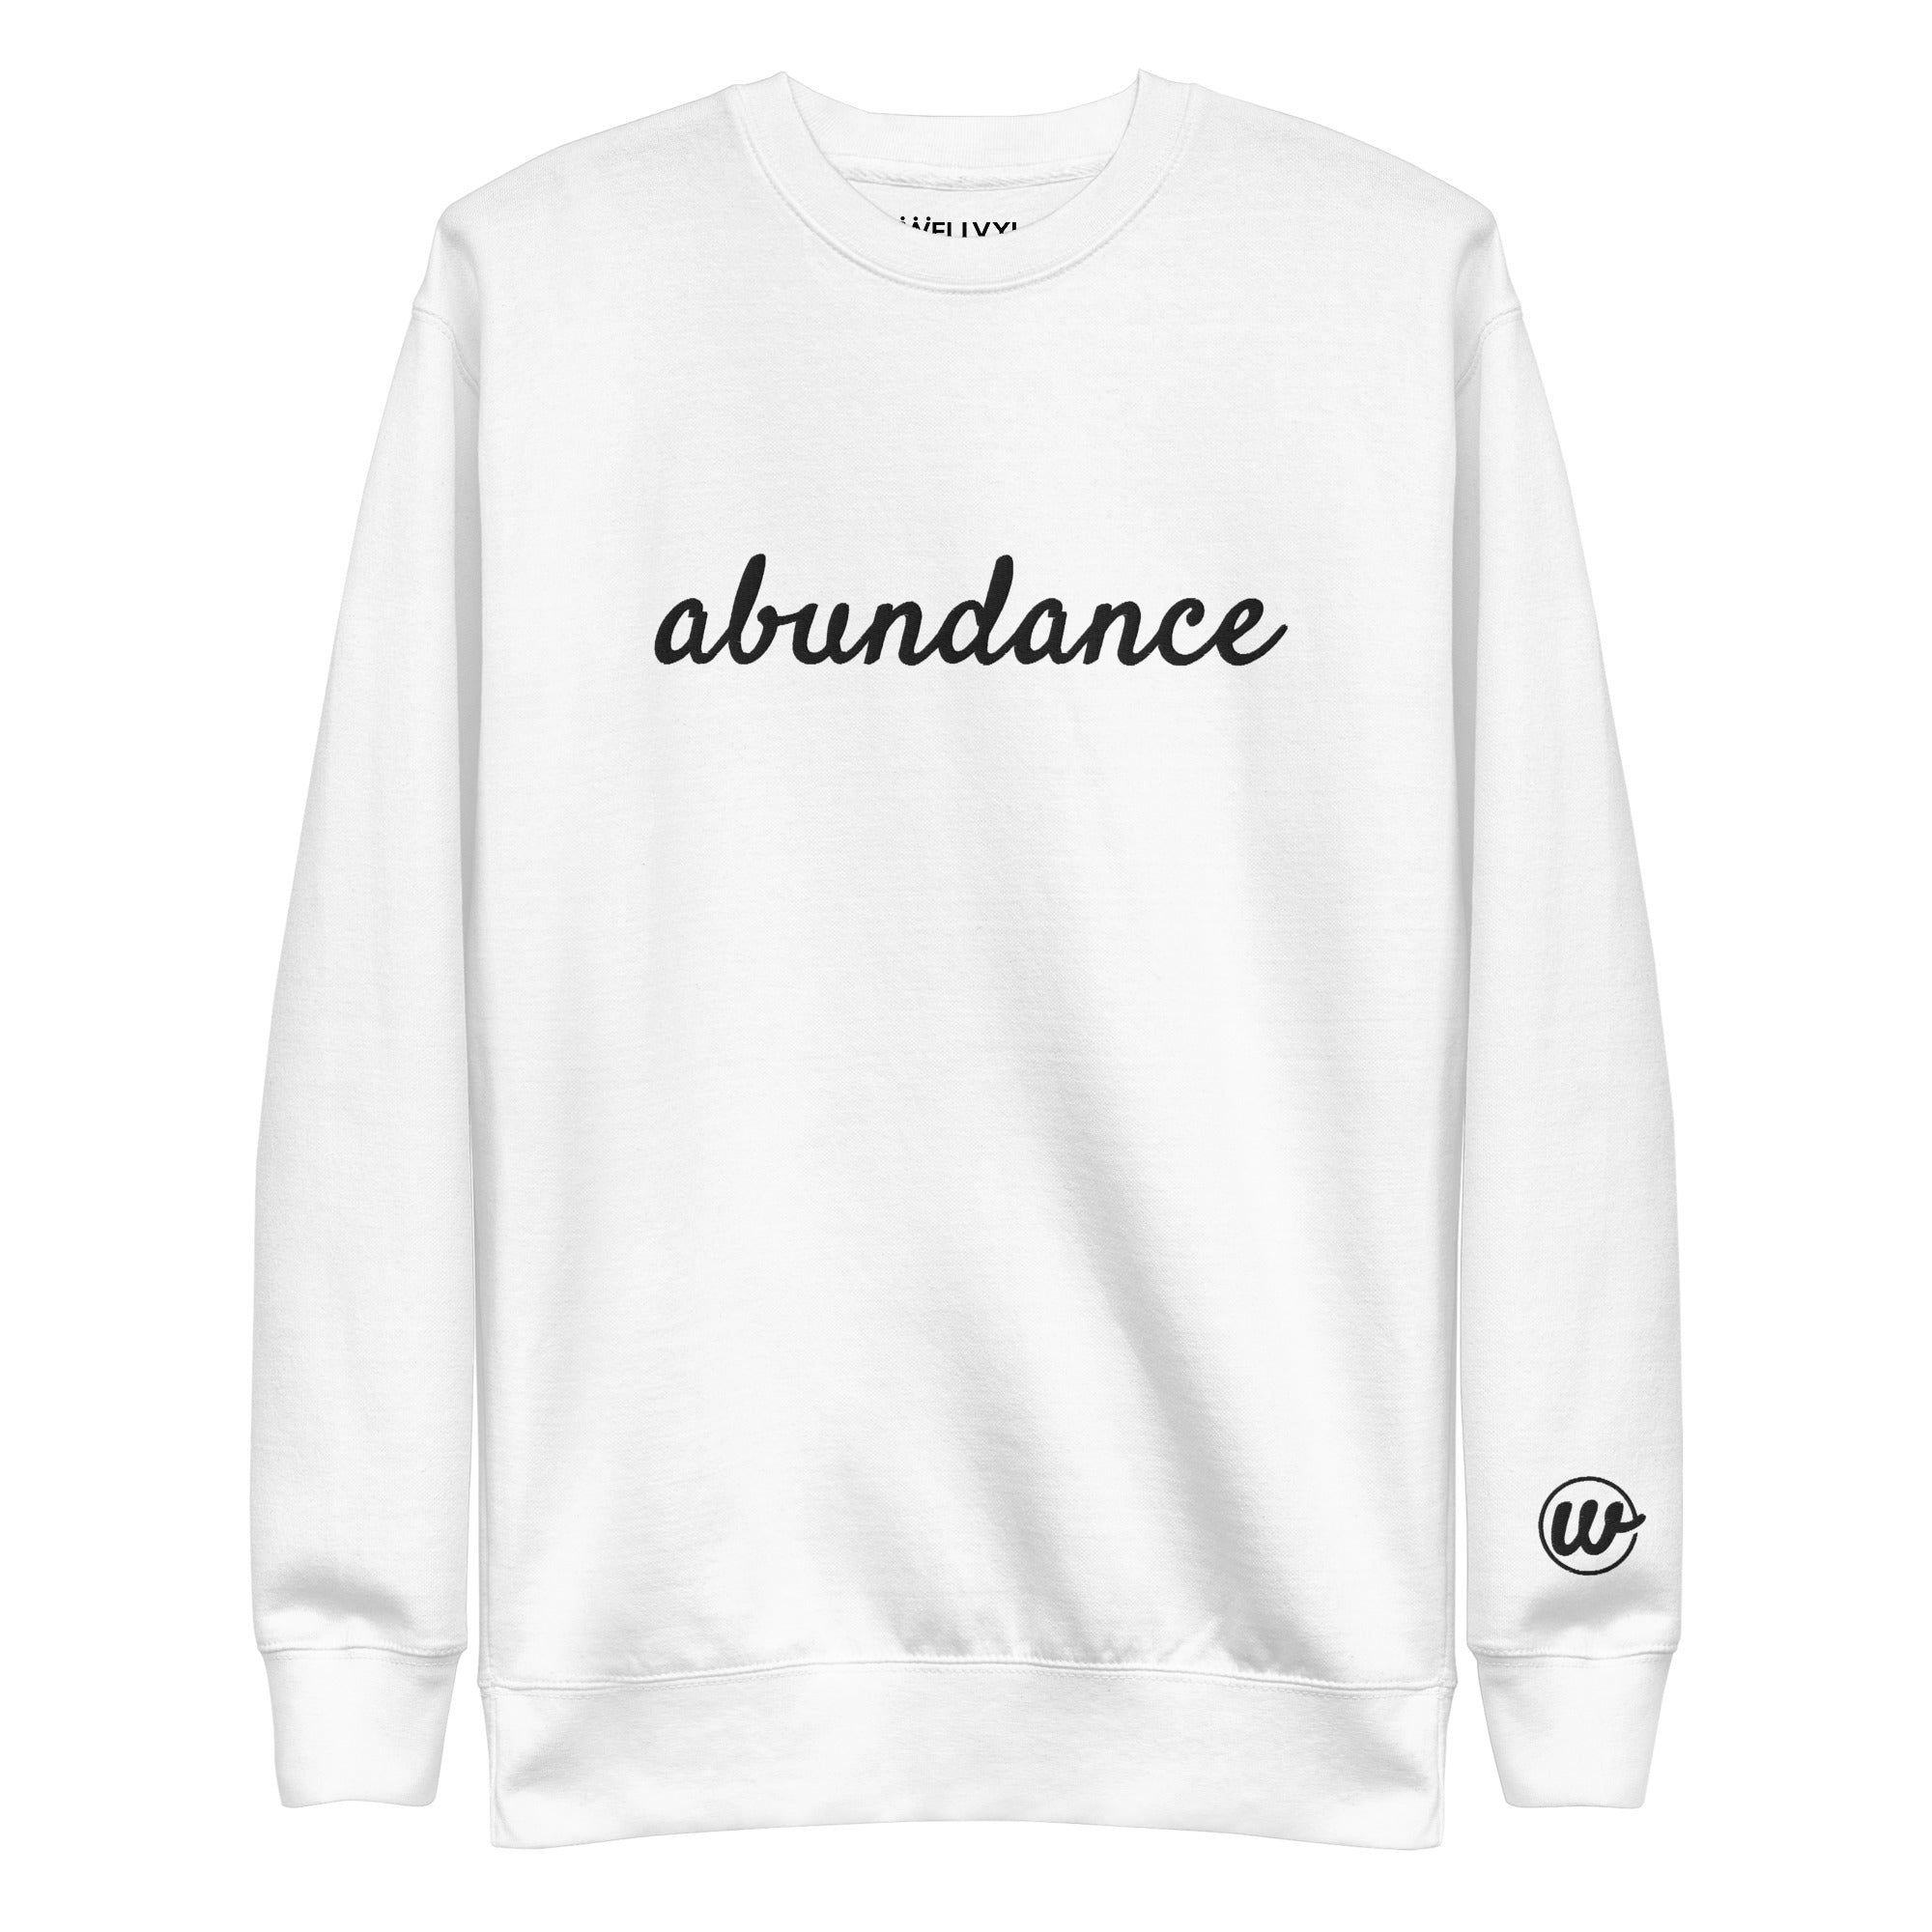 Abundance Sweatshirt